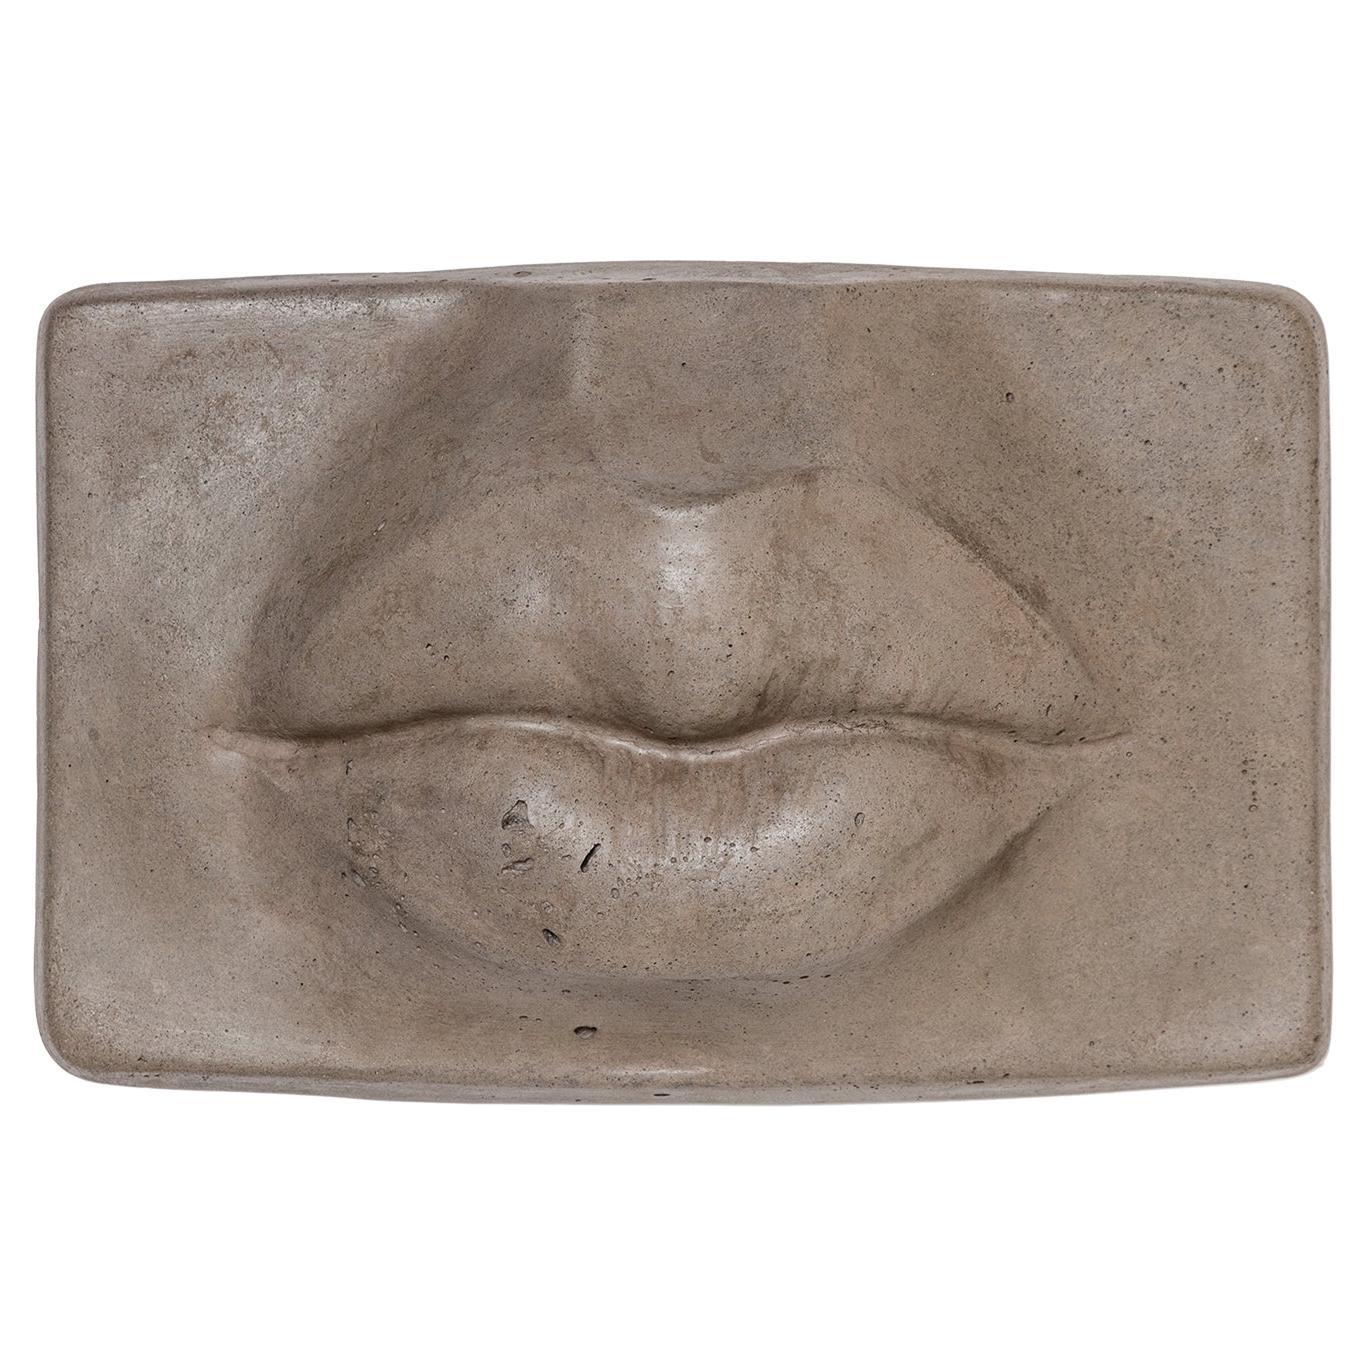 Sculpture des lèvres Nashira